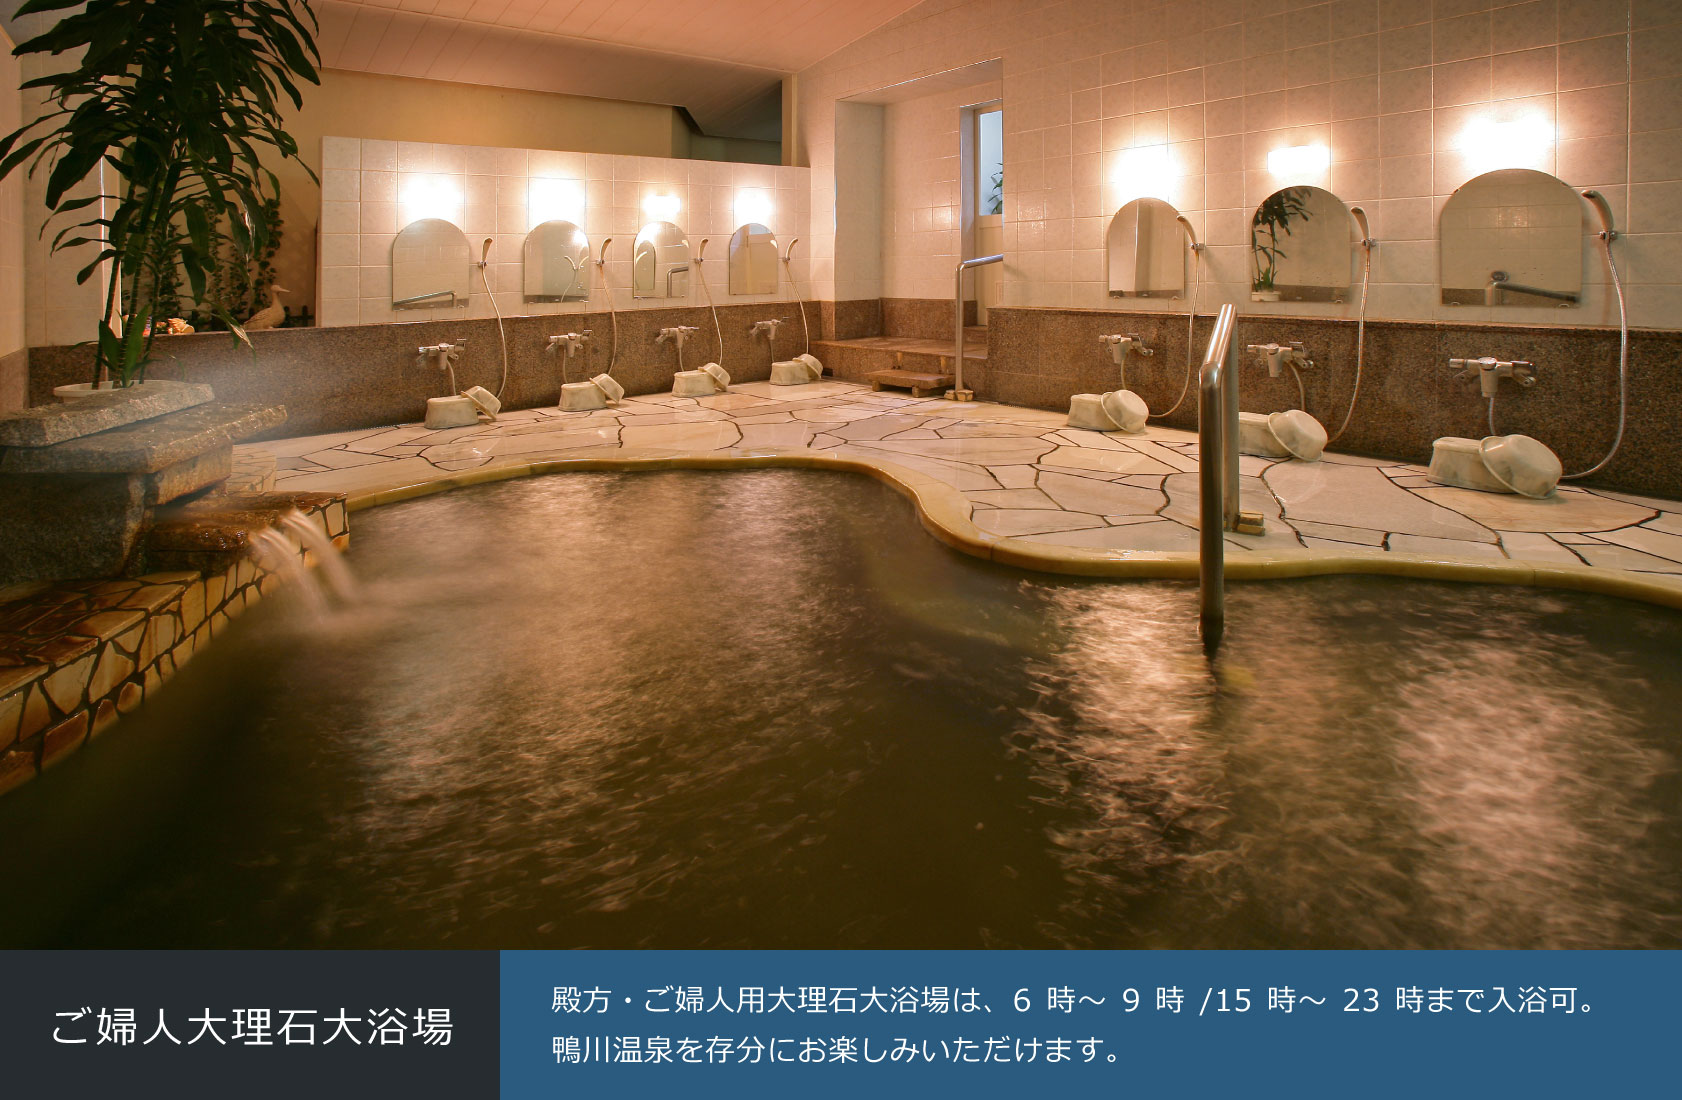 ご婦人大理石大浴場 殿方・ご婦人用大理石大浴場は、6時～9時/15時～23時まで入浴可。鴨川温泉を存分にお楽しみいただけます。